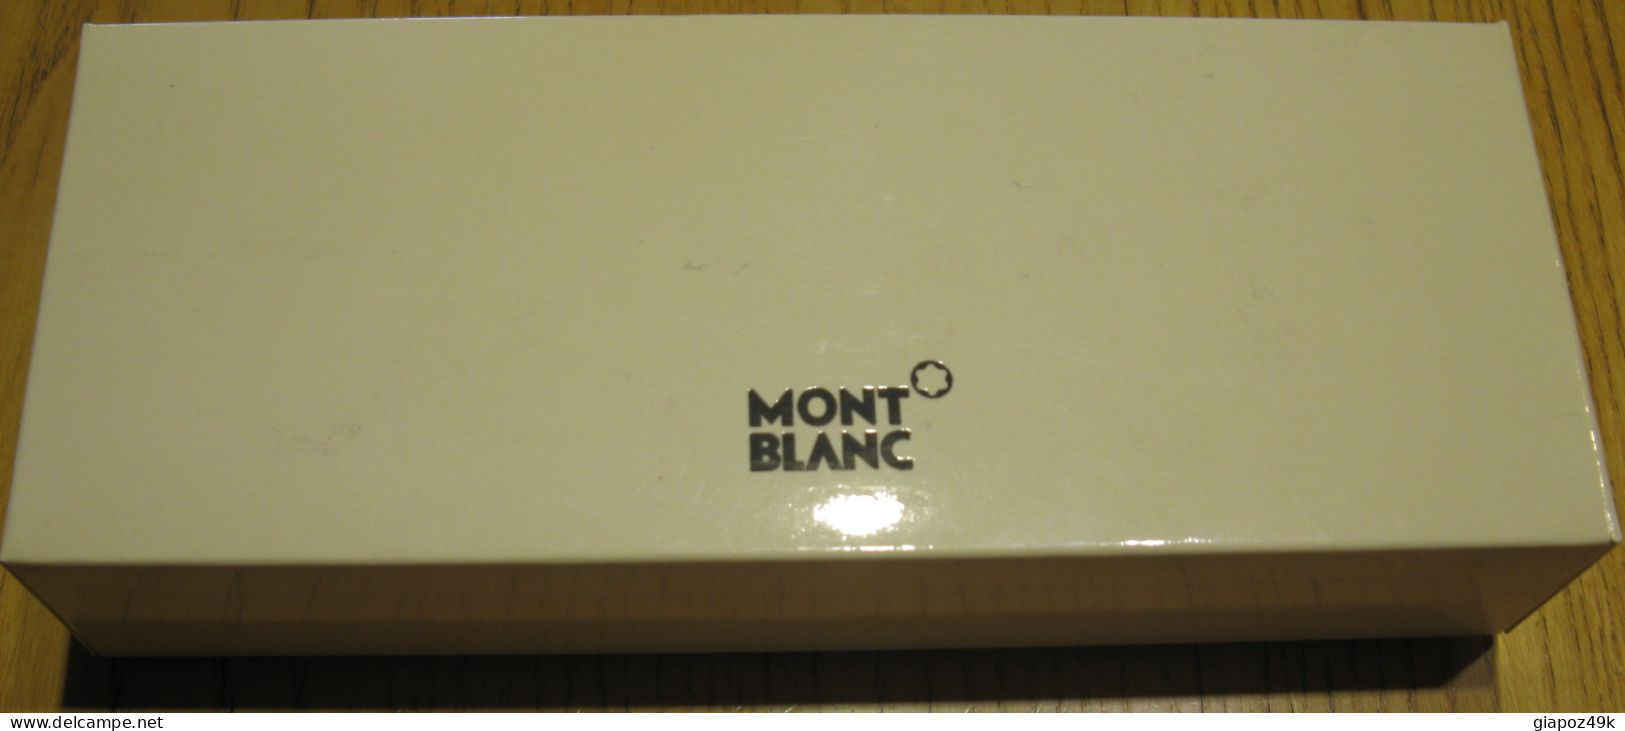 ● Penna a sfera Mont Blanc ● Noblesse Oblige ● confezione originale ● colore blu scuro ●